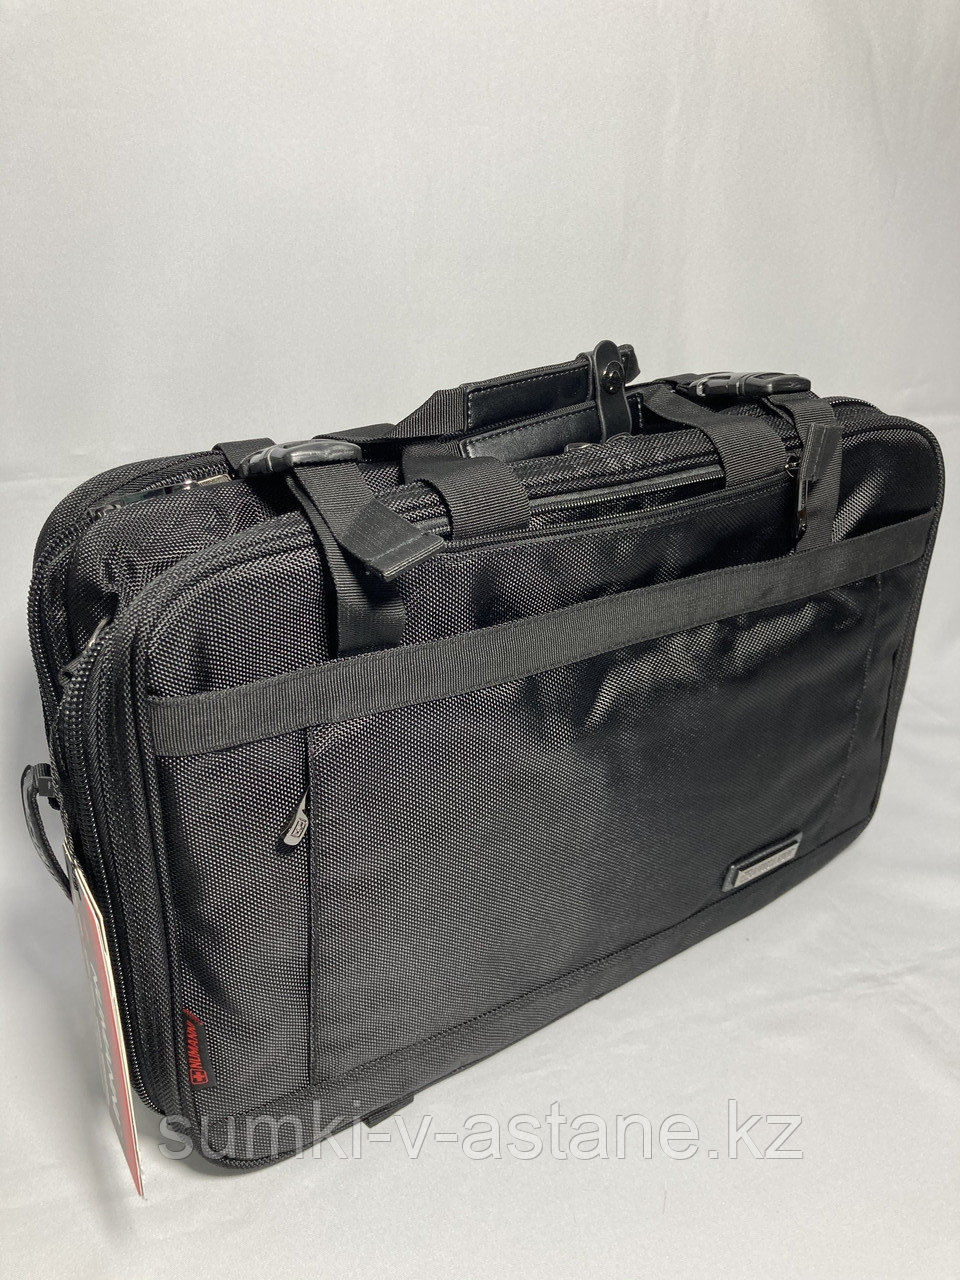 Мужской сумка- портфель из ткани "Numanni" (высота 30 см, ширина 44 см, глубина 14 см)